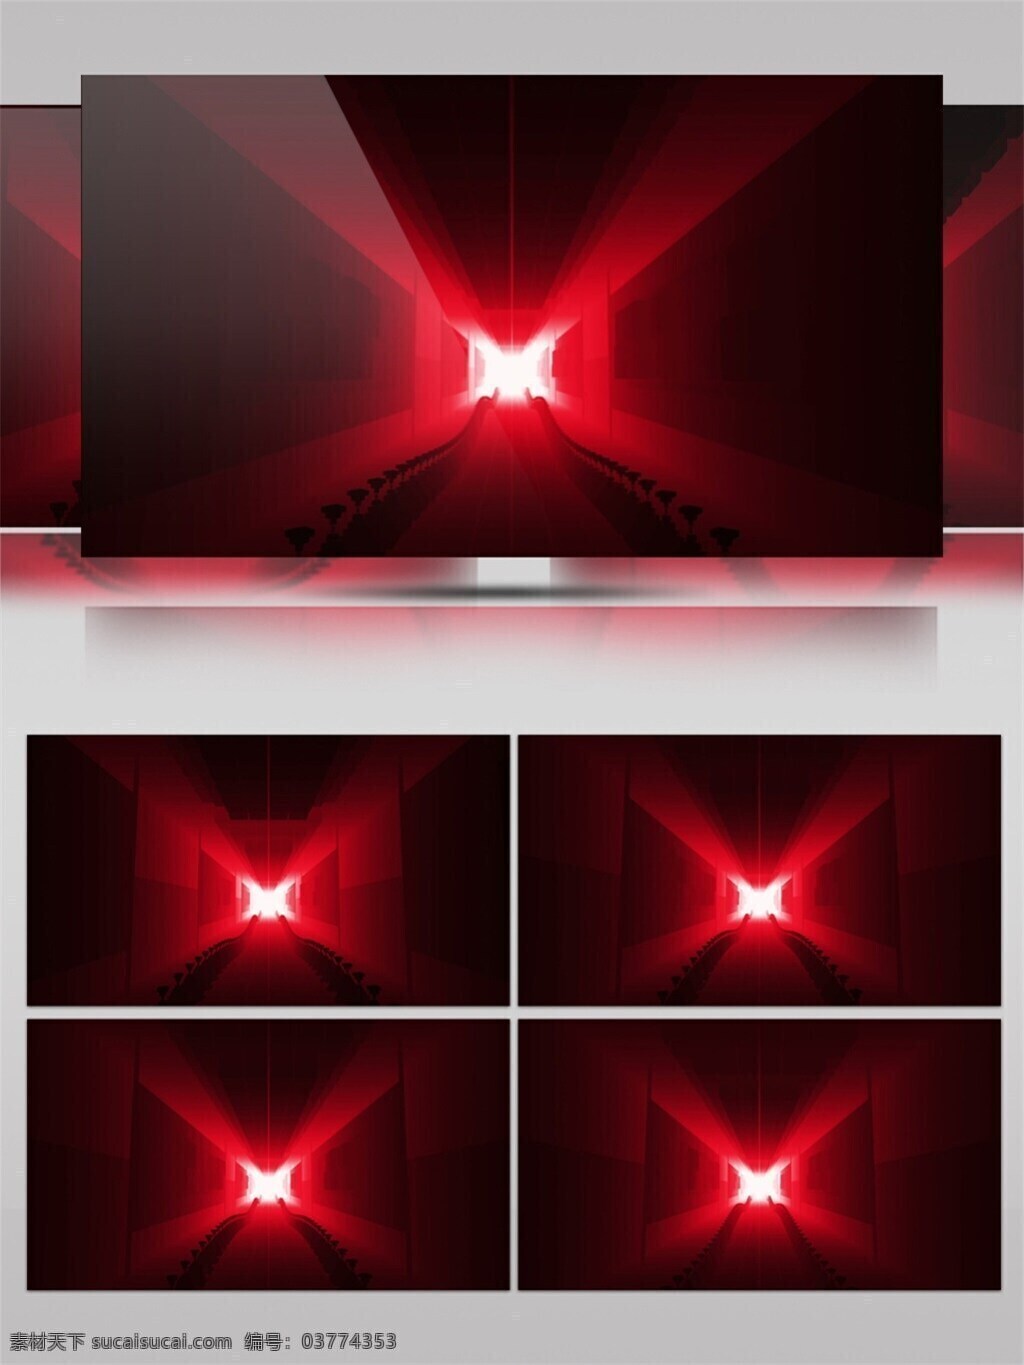 红光 星际 隧道 视频 动态流光 浩瀚宇宙 红色 科学 宇宙